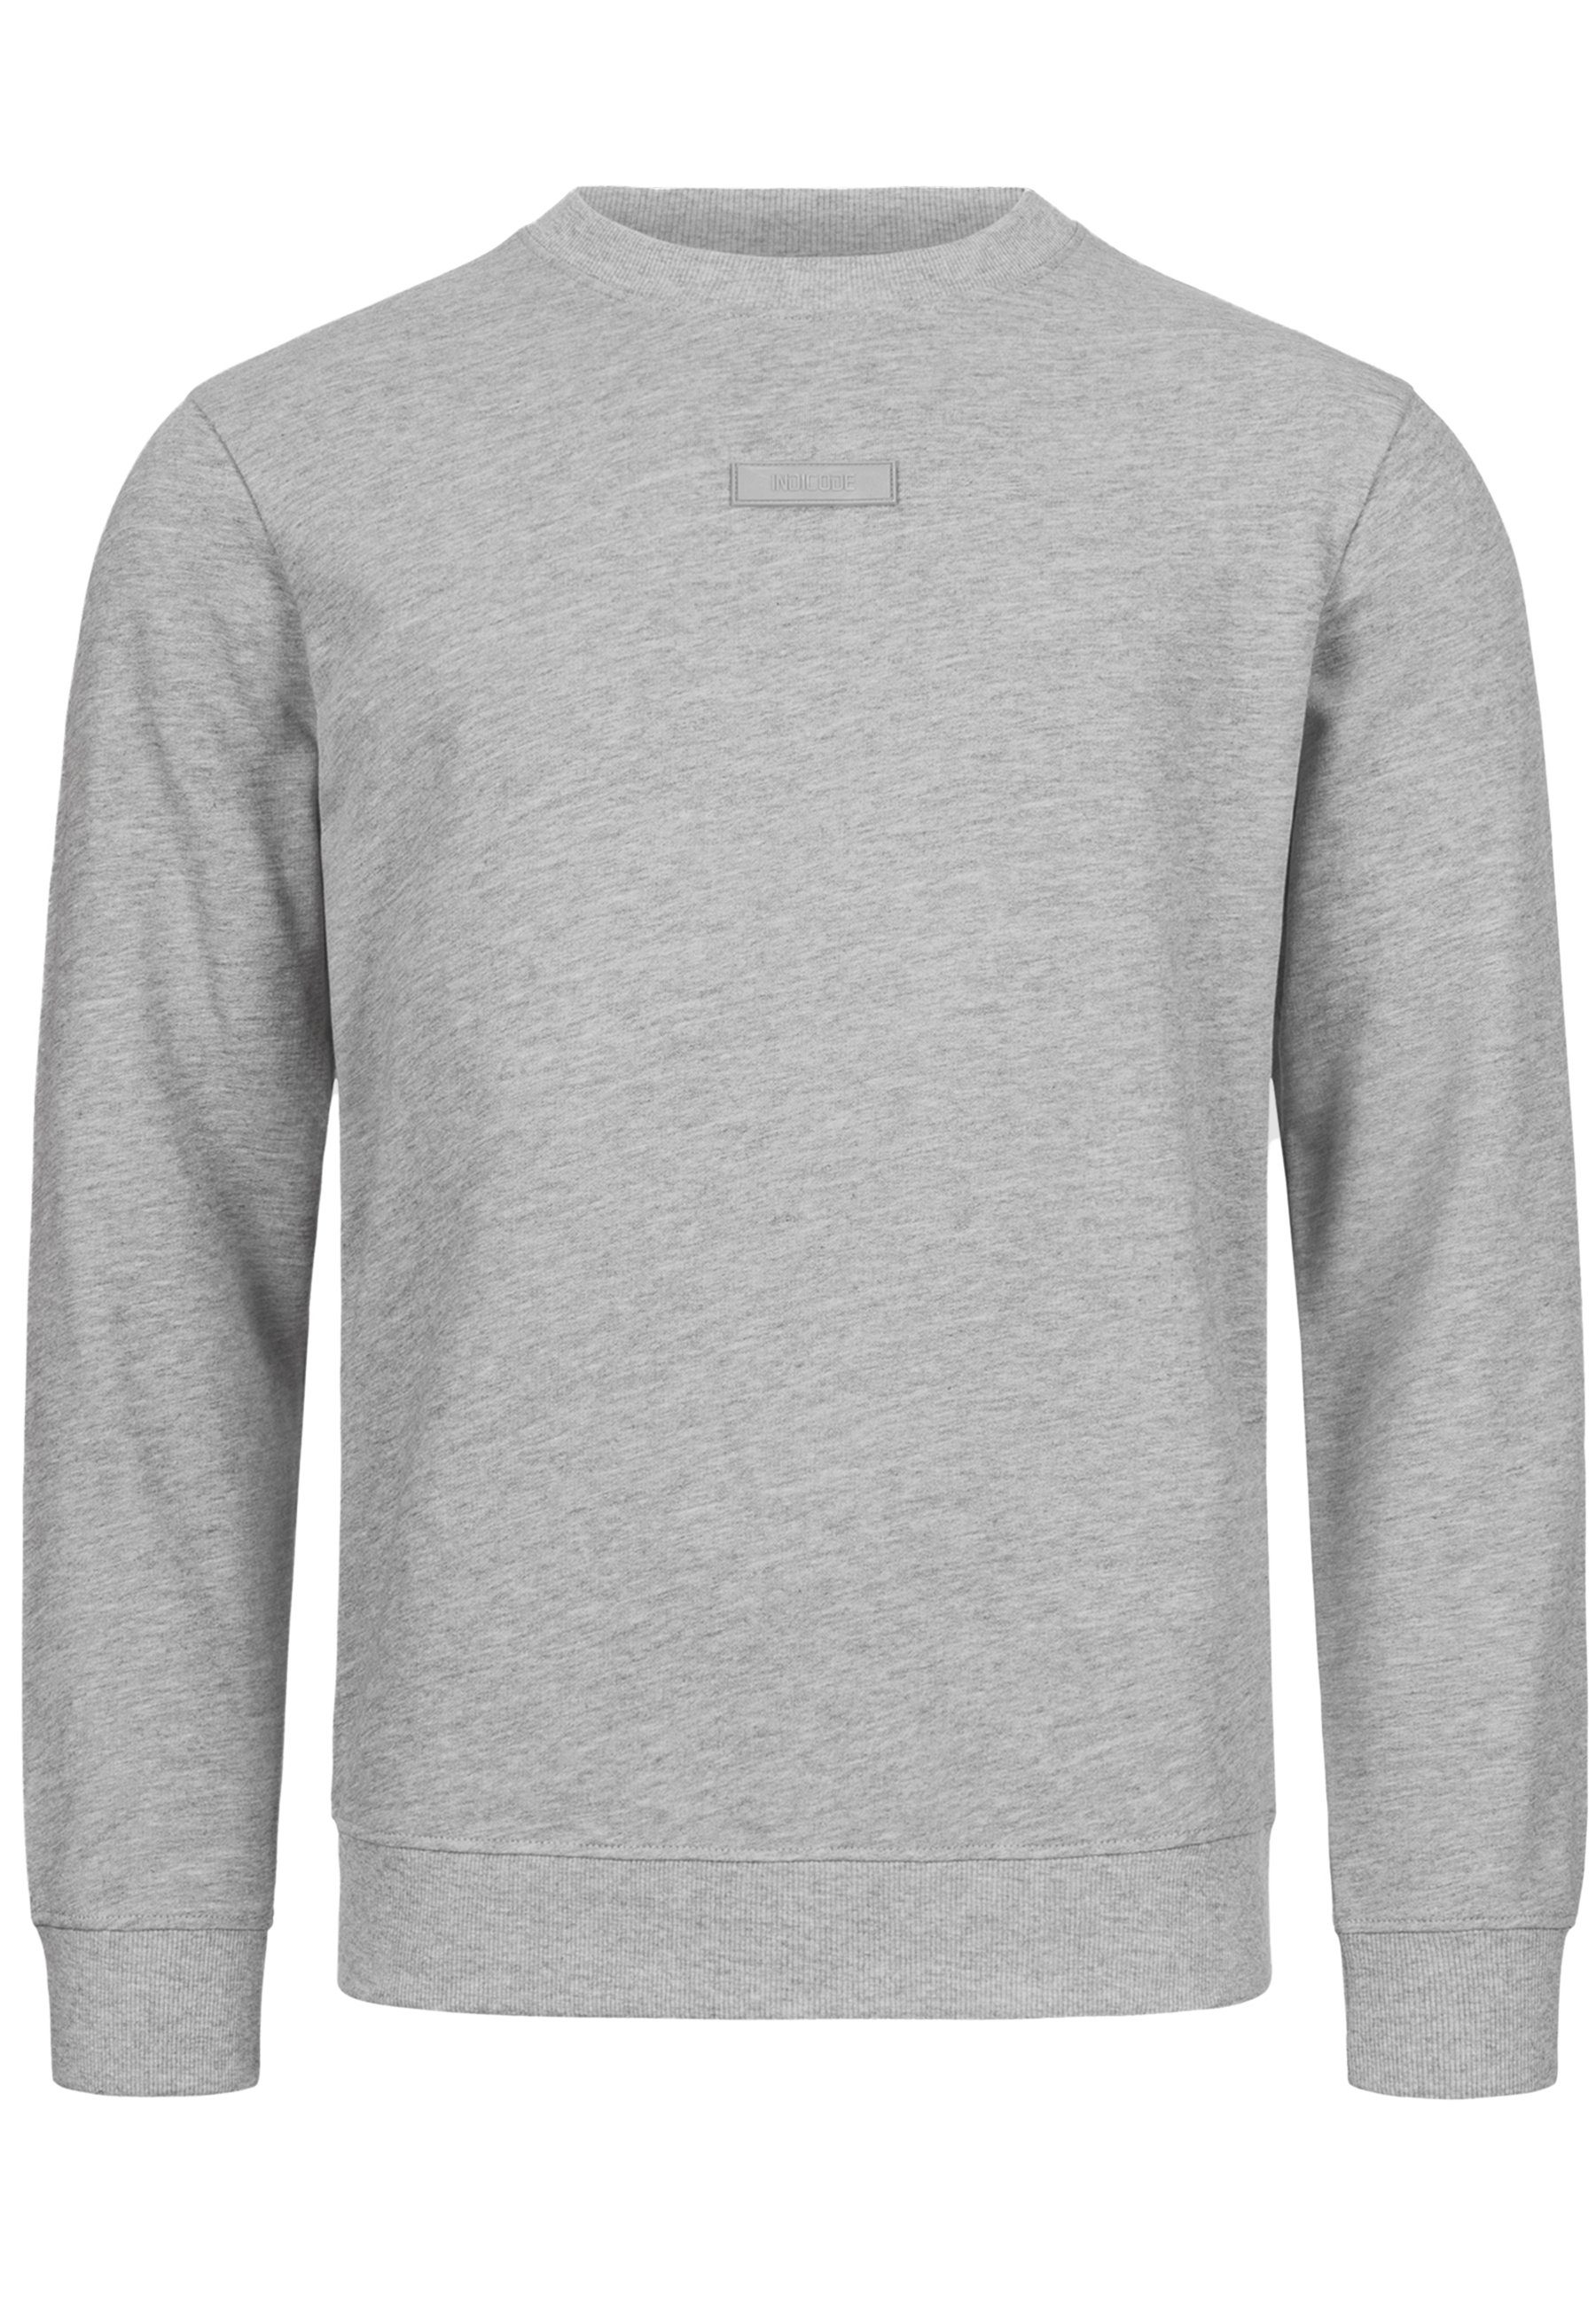 Sweater Grey Lt Indicode Baxter Mix